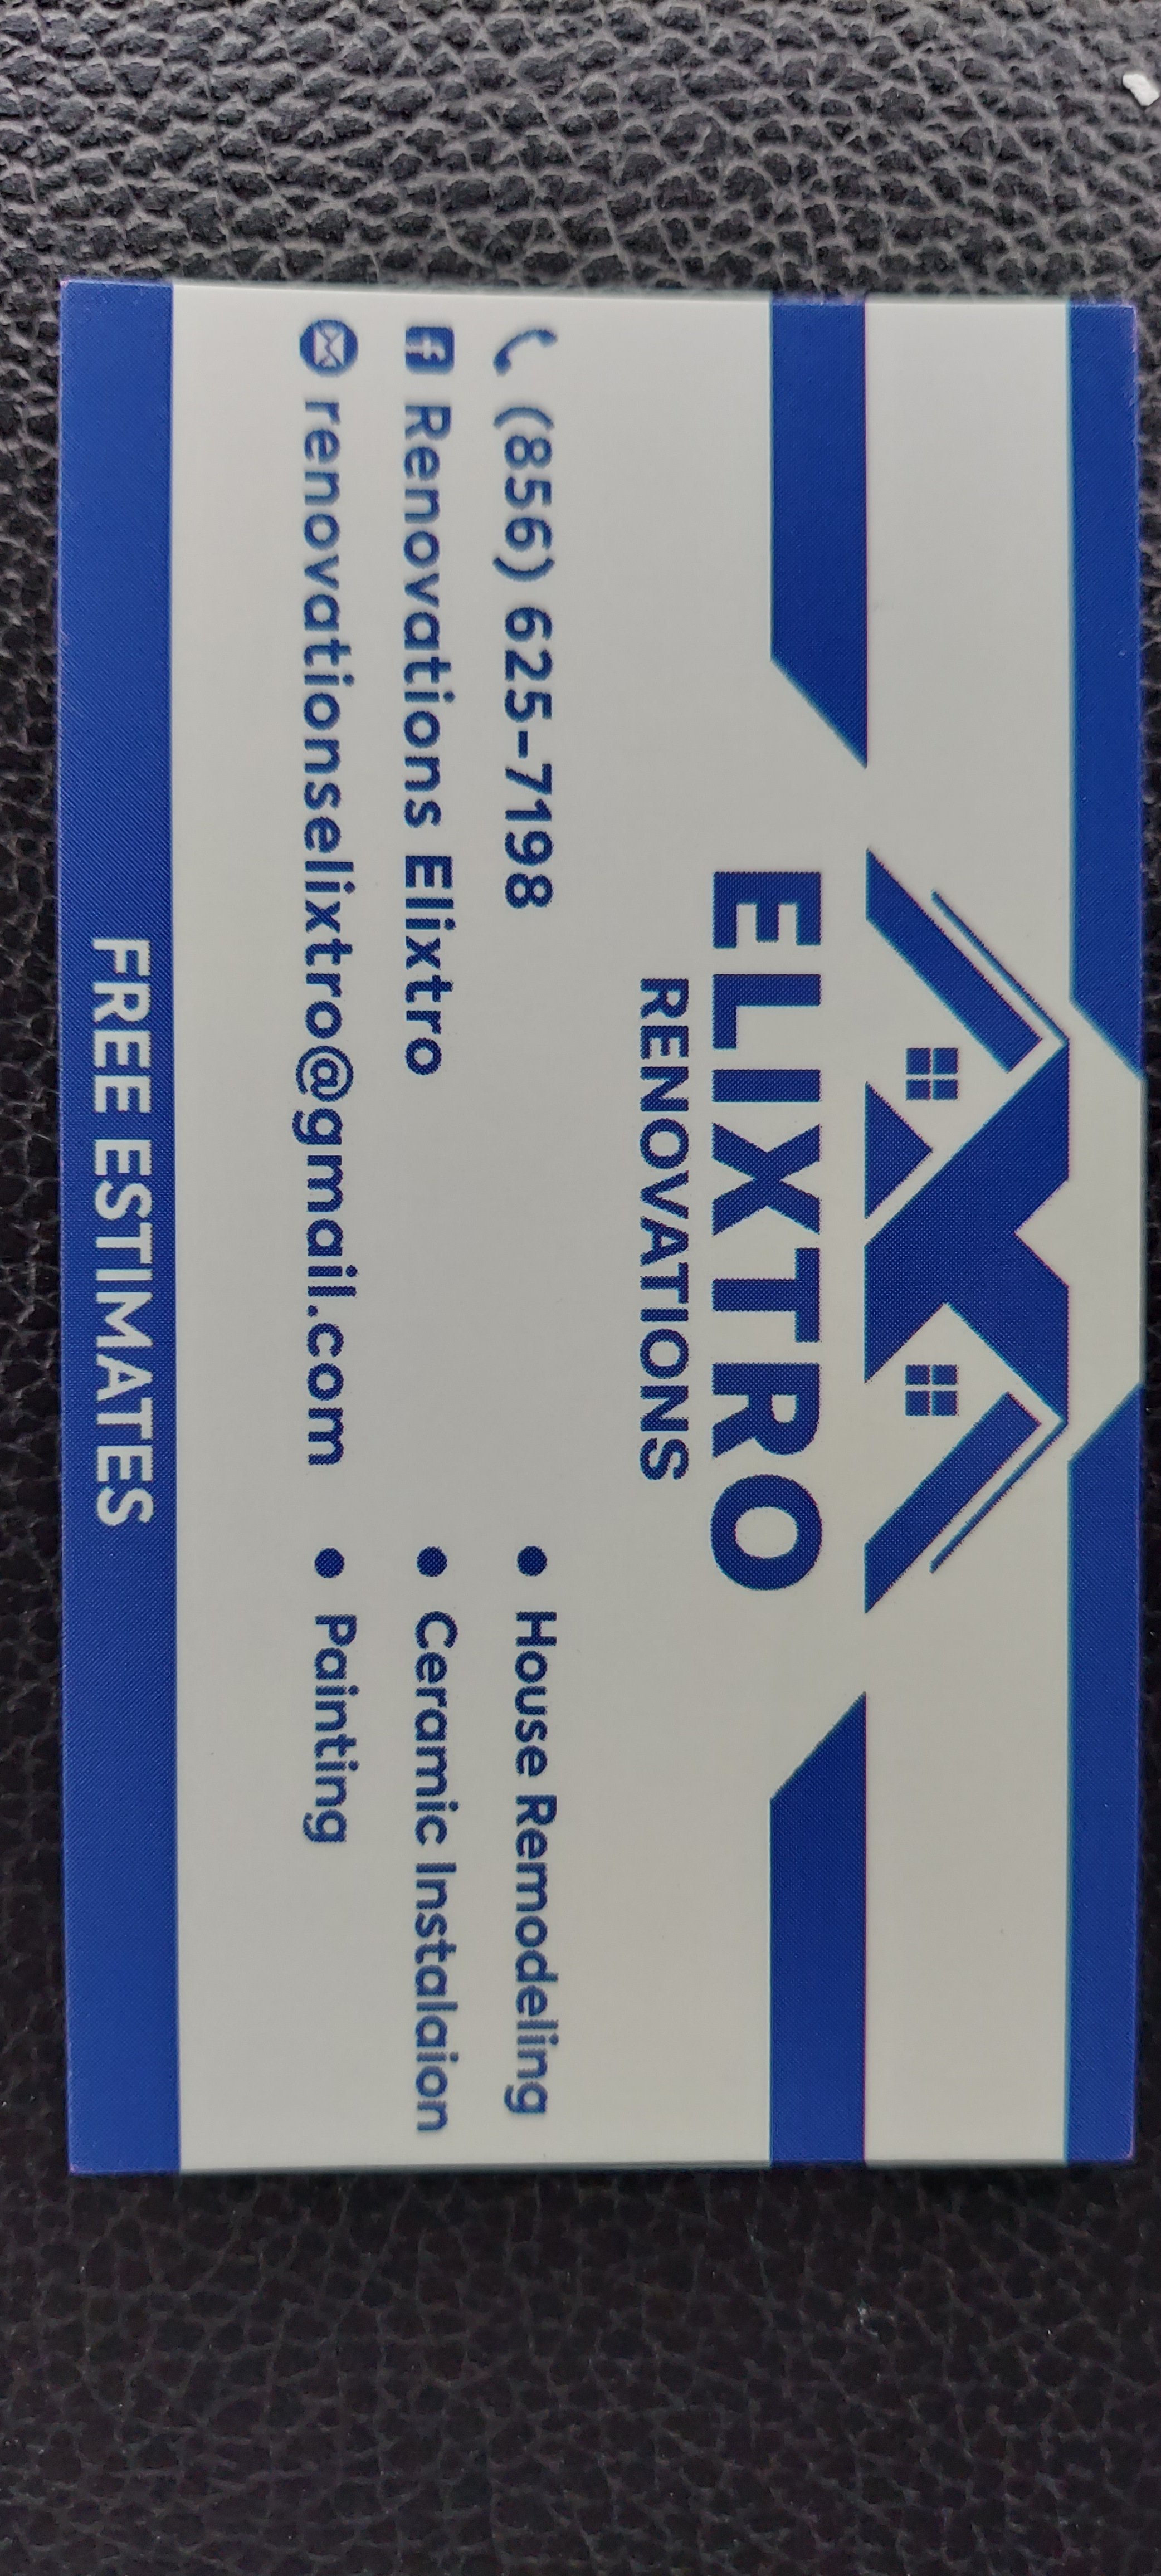 Renovations Elixtro Logo